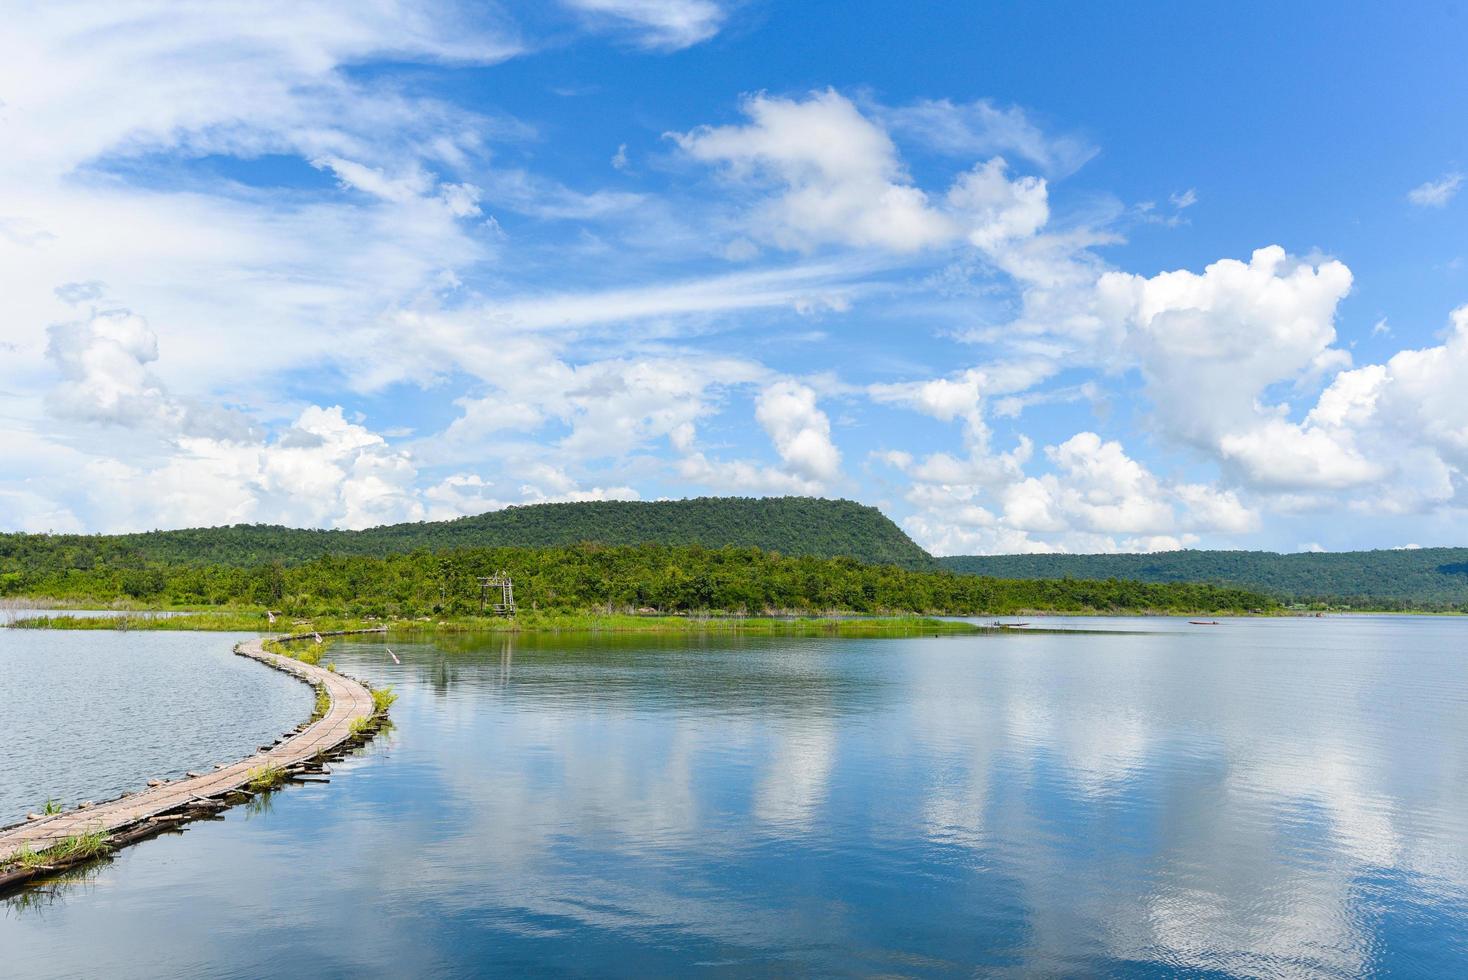 puerto en agua de río en Tailandia cielo azul con nubes hermoso y paisaje de fondo de montaña de la isla - puente de madera de bambú en la superficie del agua foto